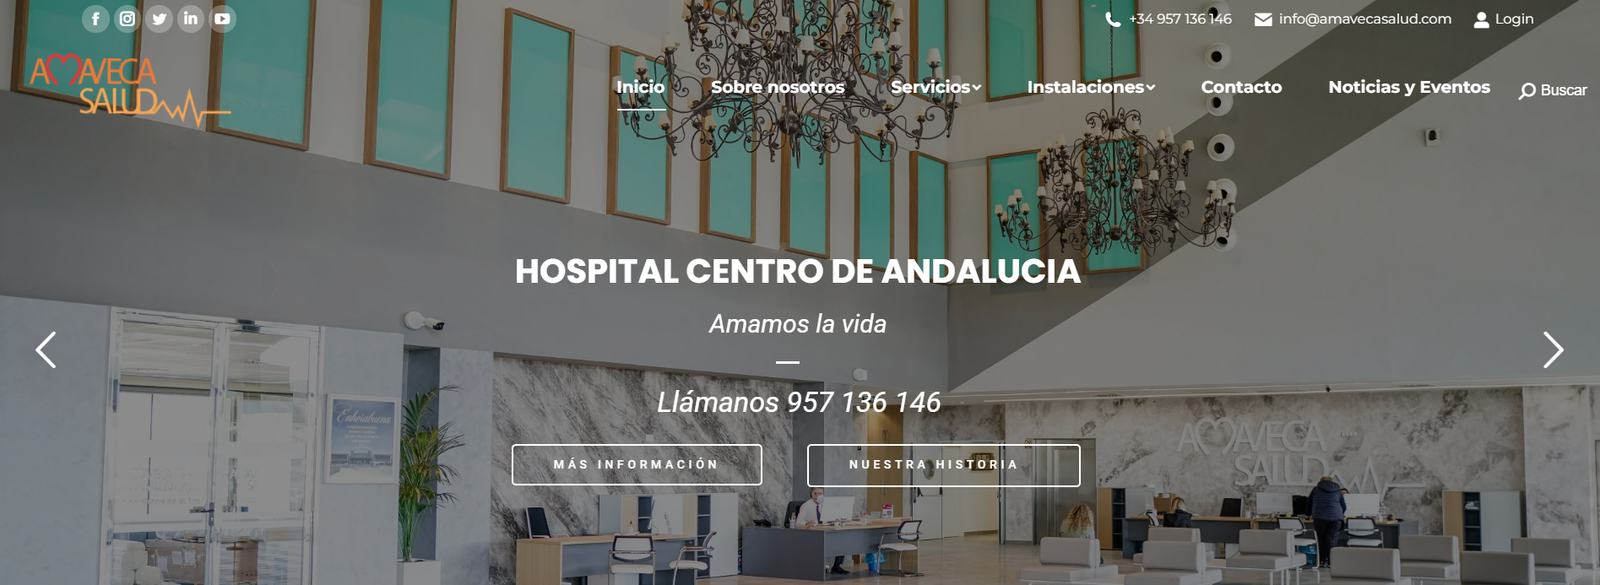 Image of Hospital Centro de Andalucia